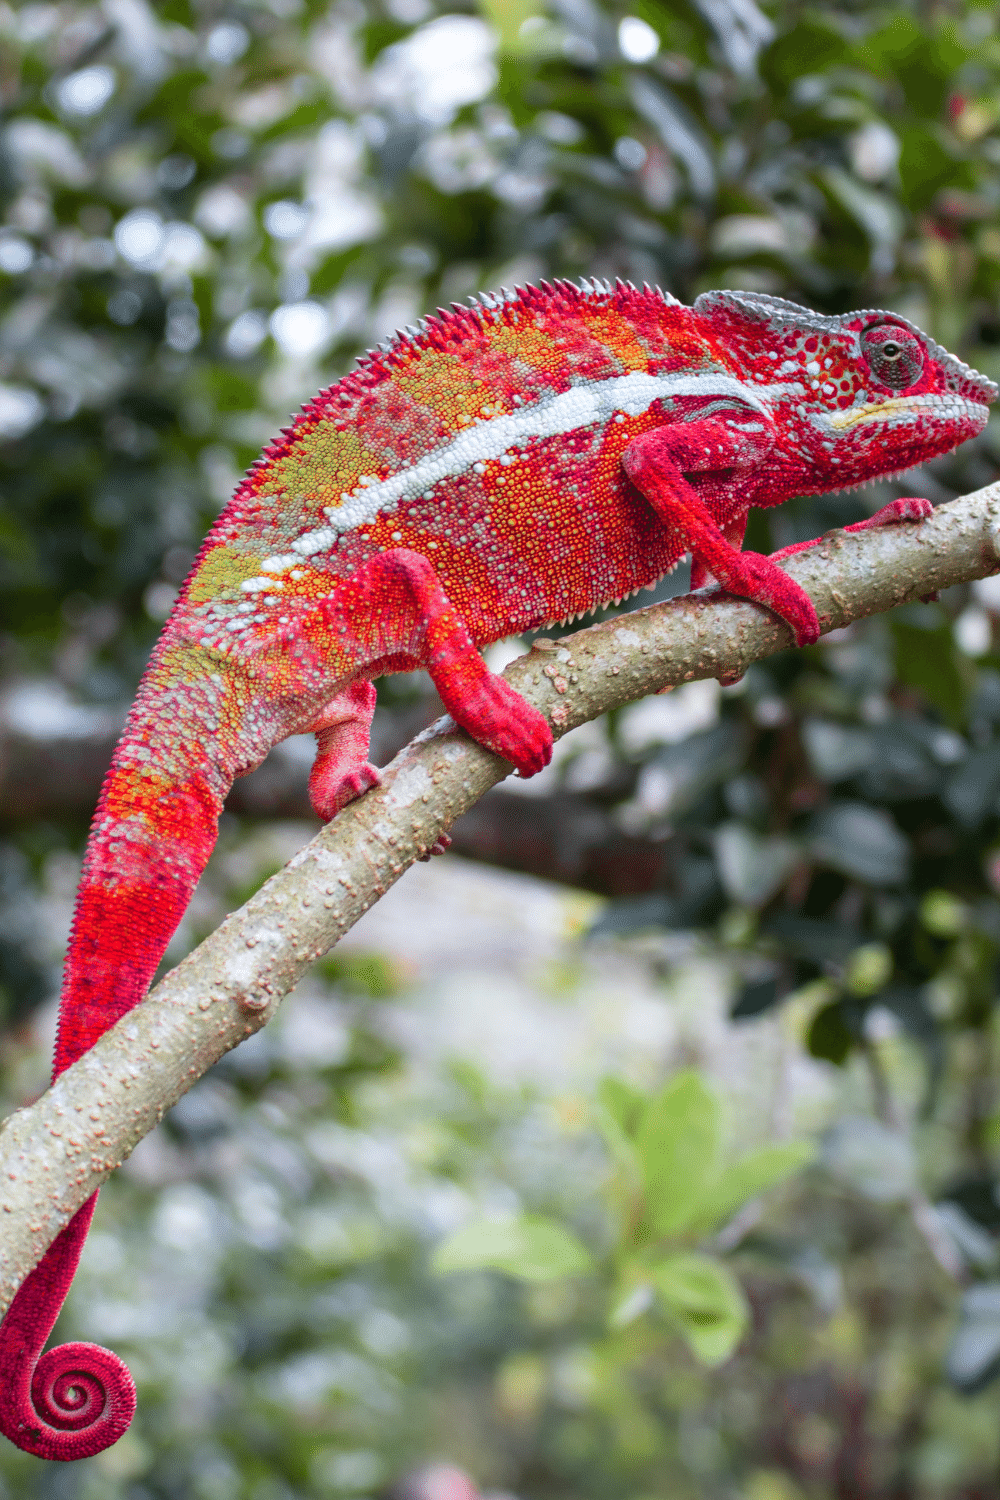 Adult Panther Chameleons